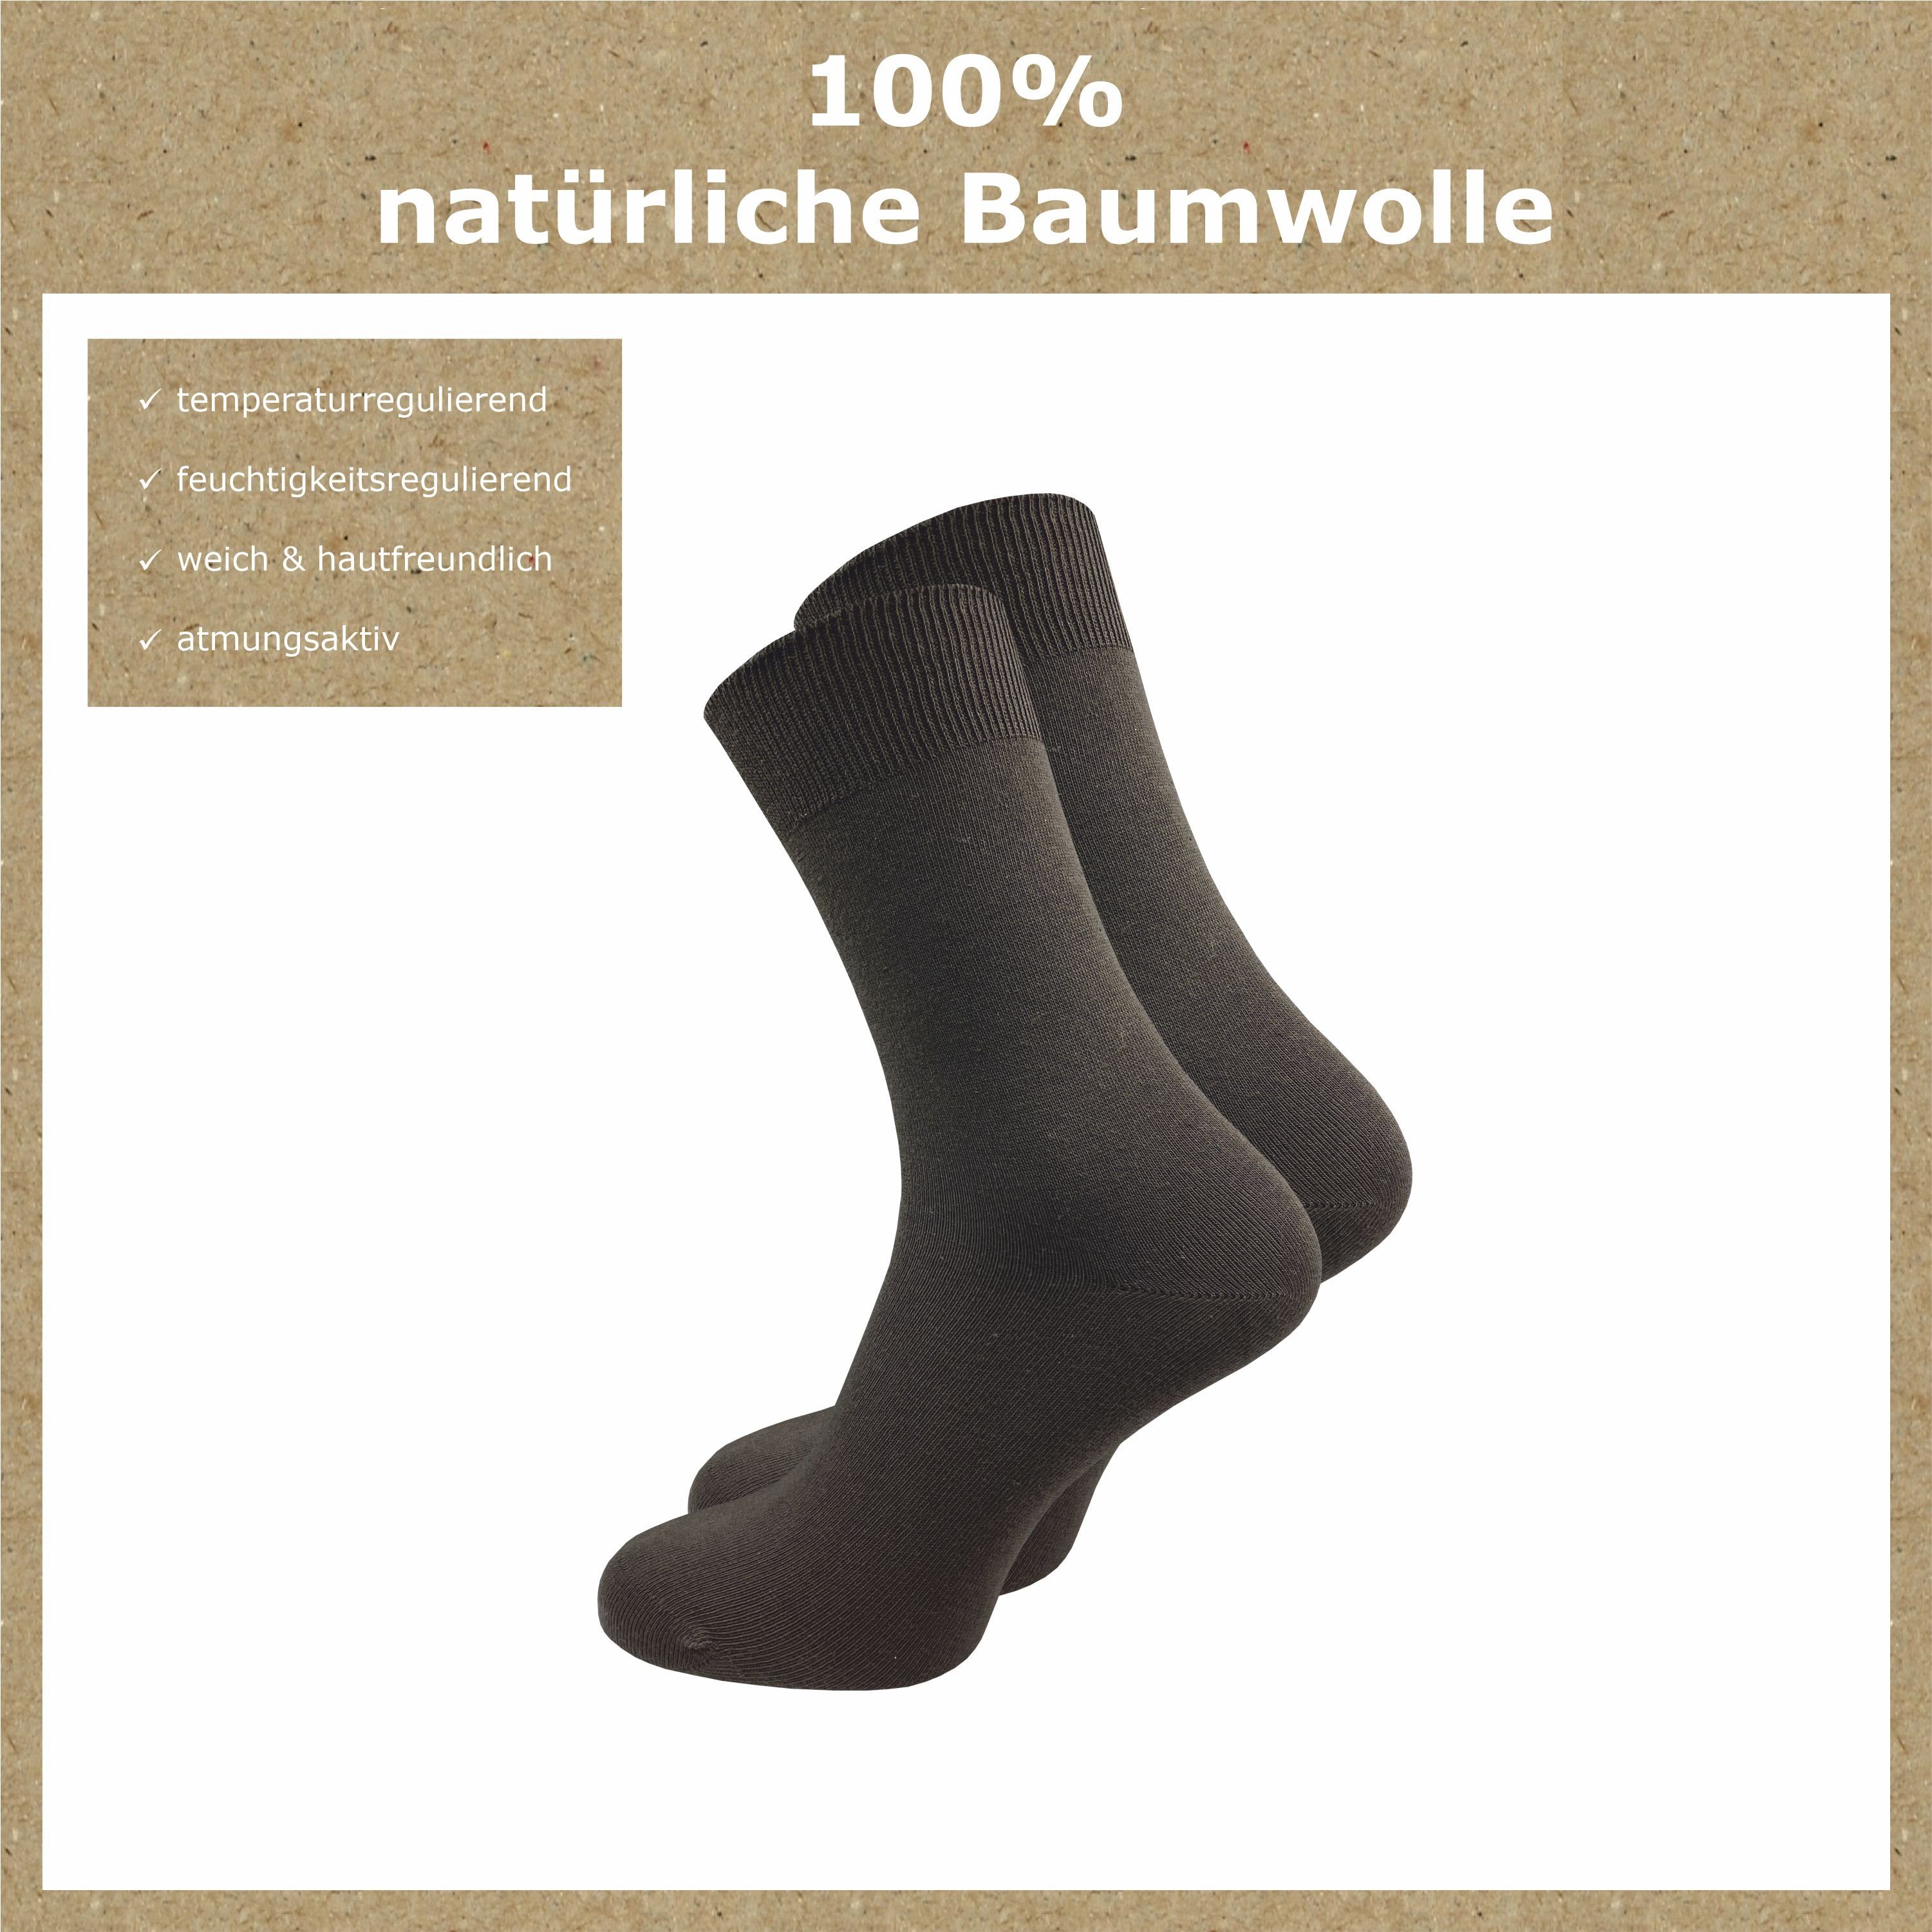 venenfreundlichem Baumwolle, GAWILO Freizeit und 100% für mit aus und Herren Dunkelbraun Damen Business Paar) Socken (10 Komfortbund